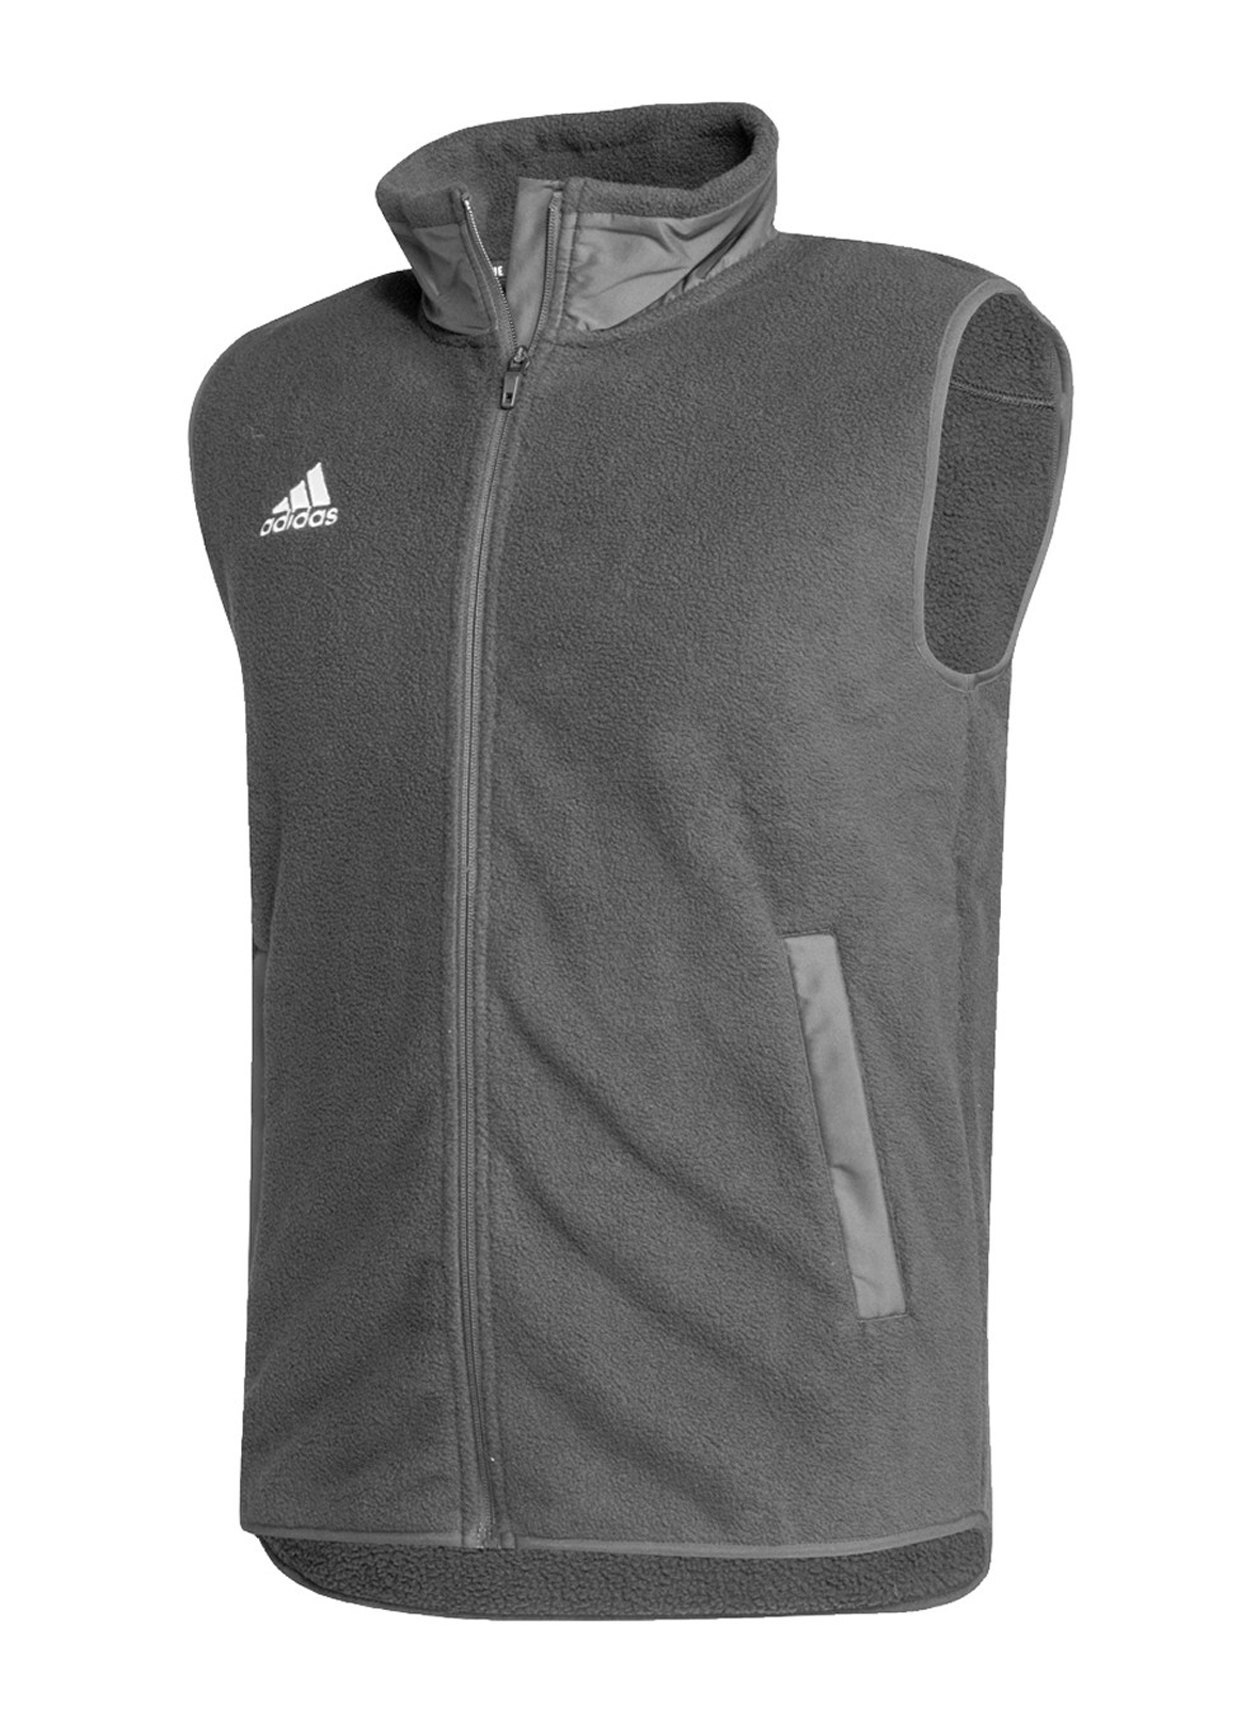 Adidas AD139 - Men's Stadium Vest